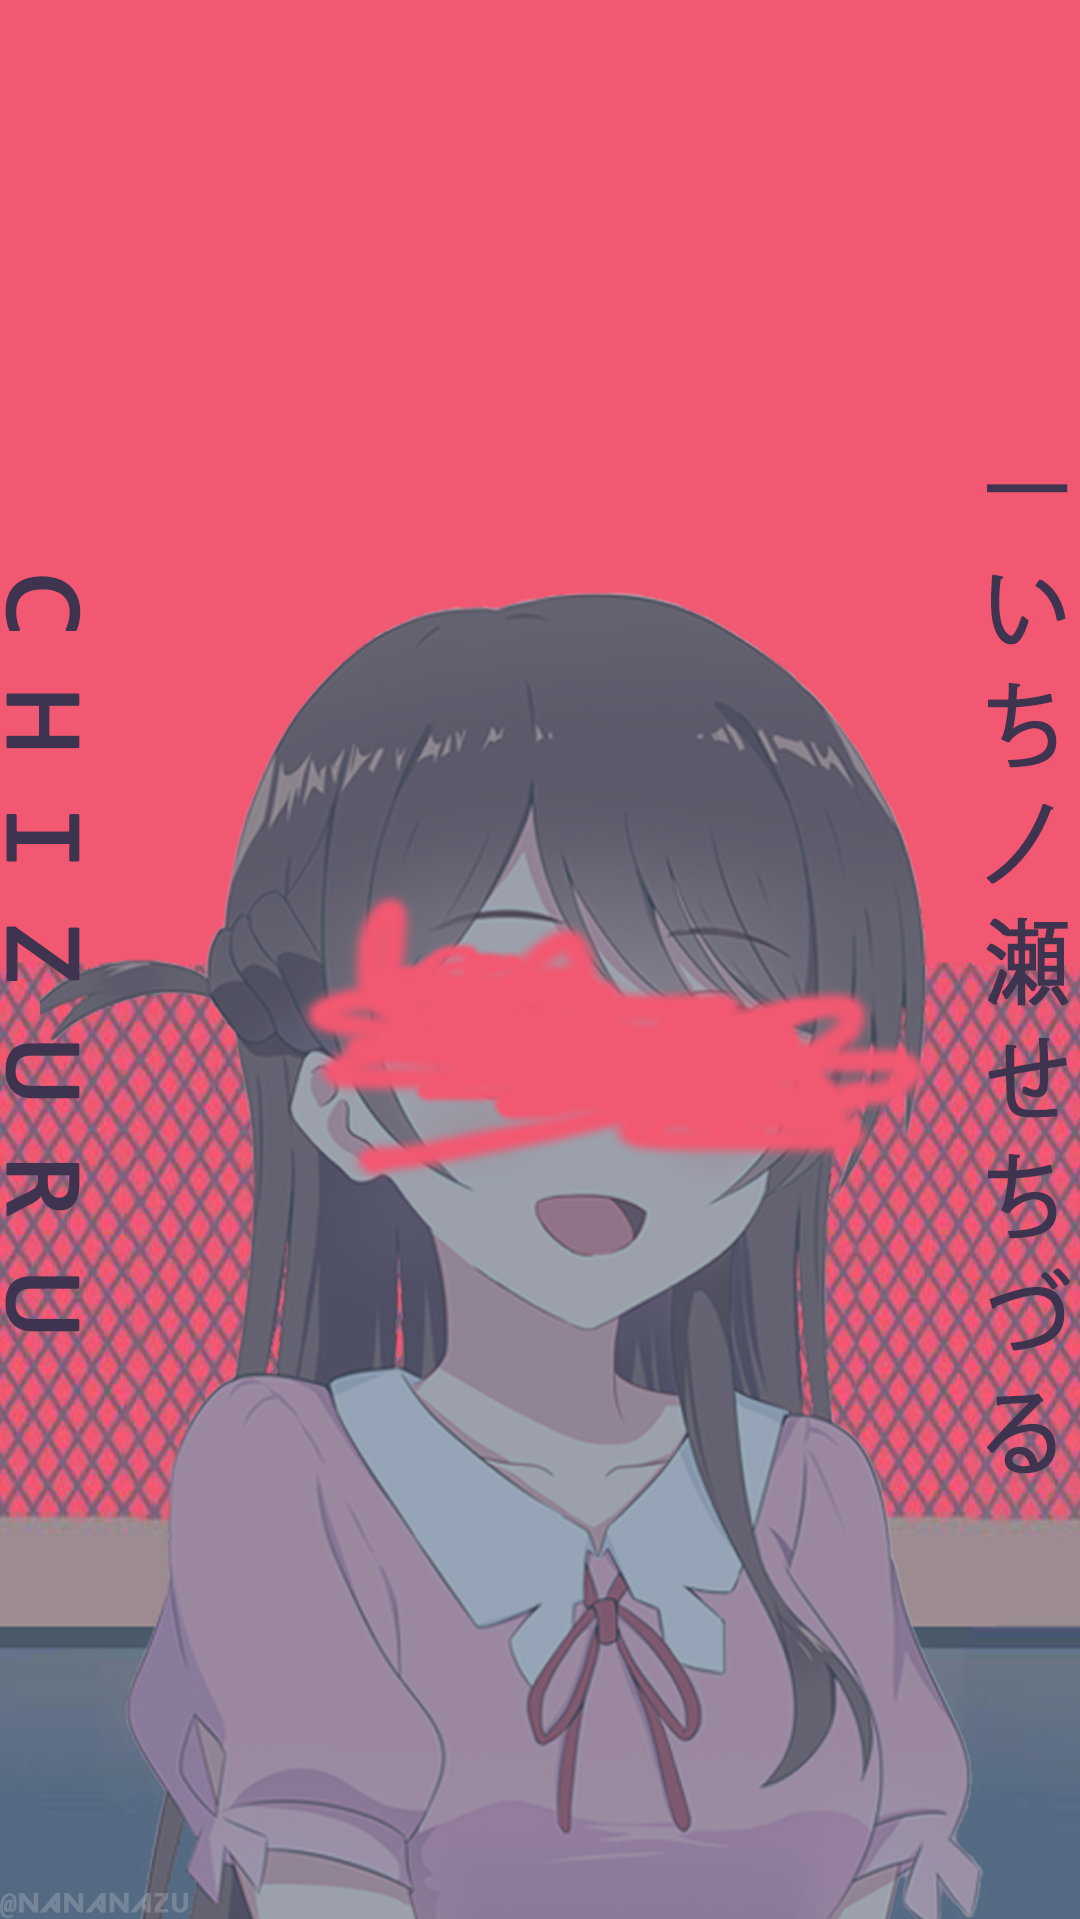 Ichinose Chizuru Yoasobi Wallpaper Android Cute Anime Character